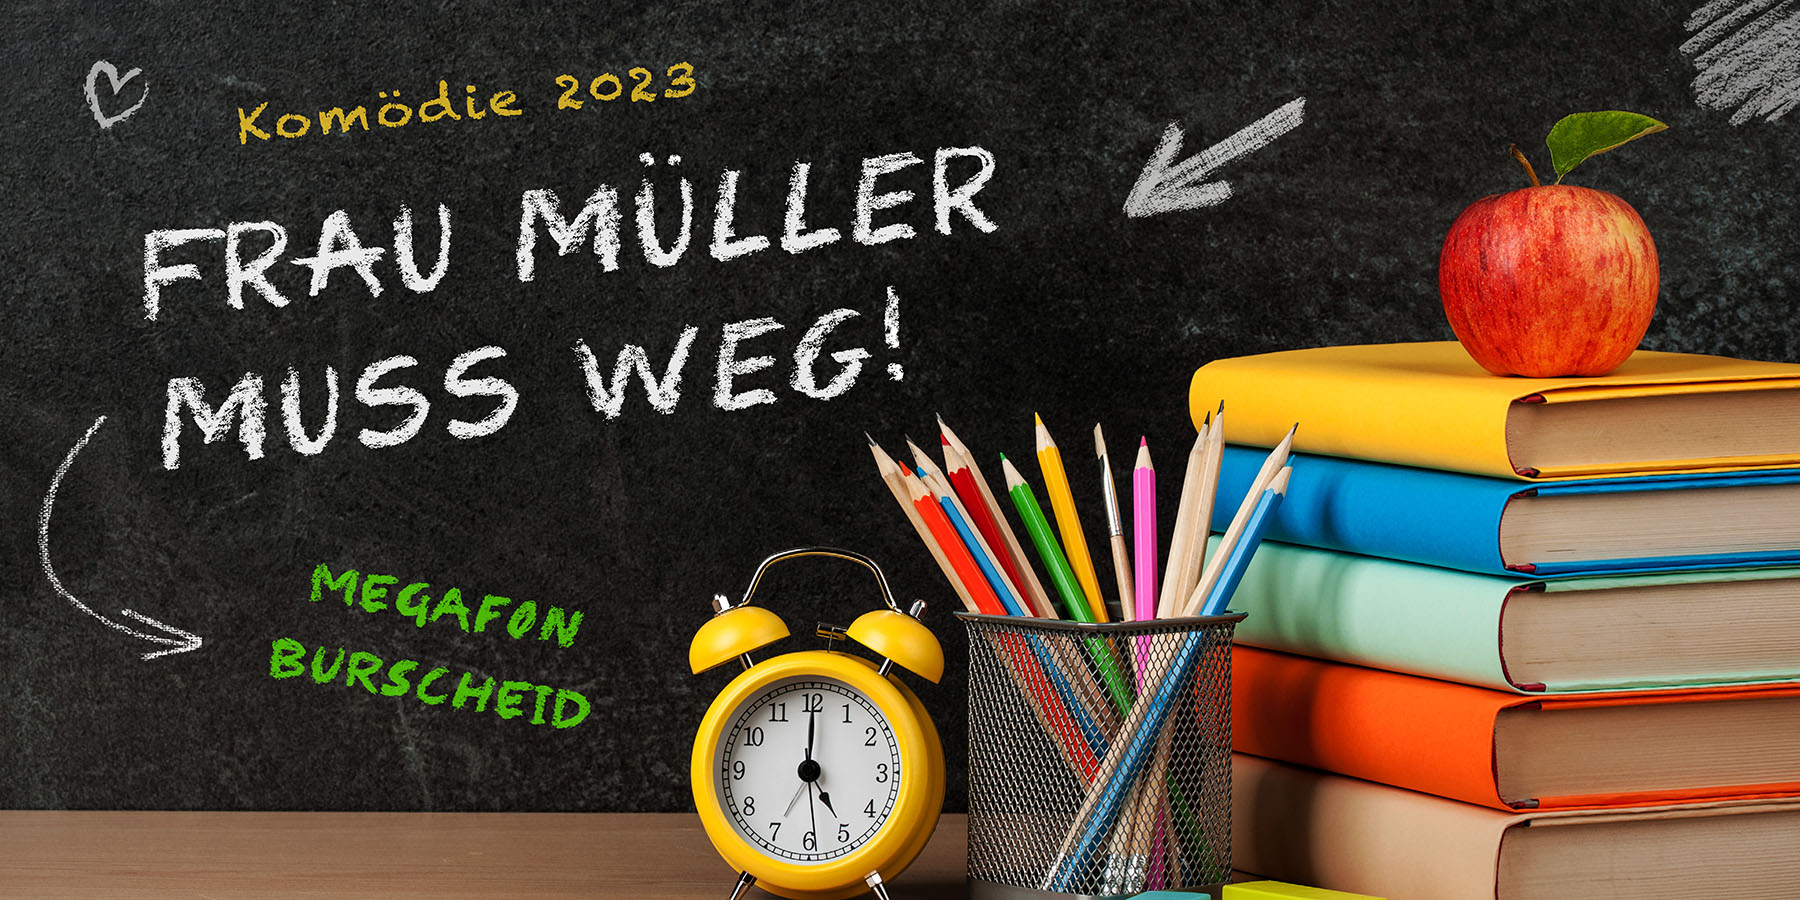 Frau Müller muss weg! - Komödie 2023